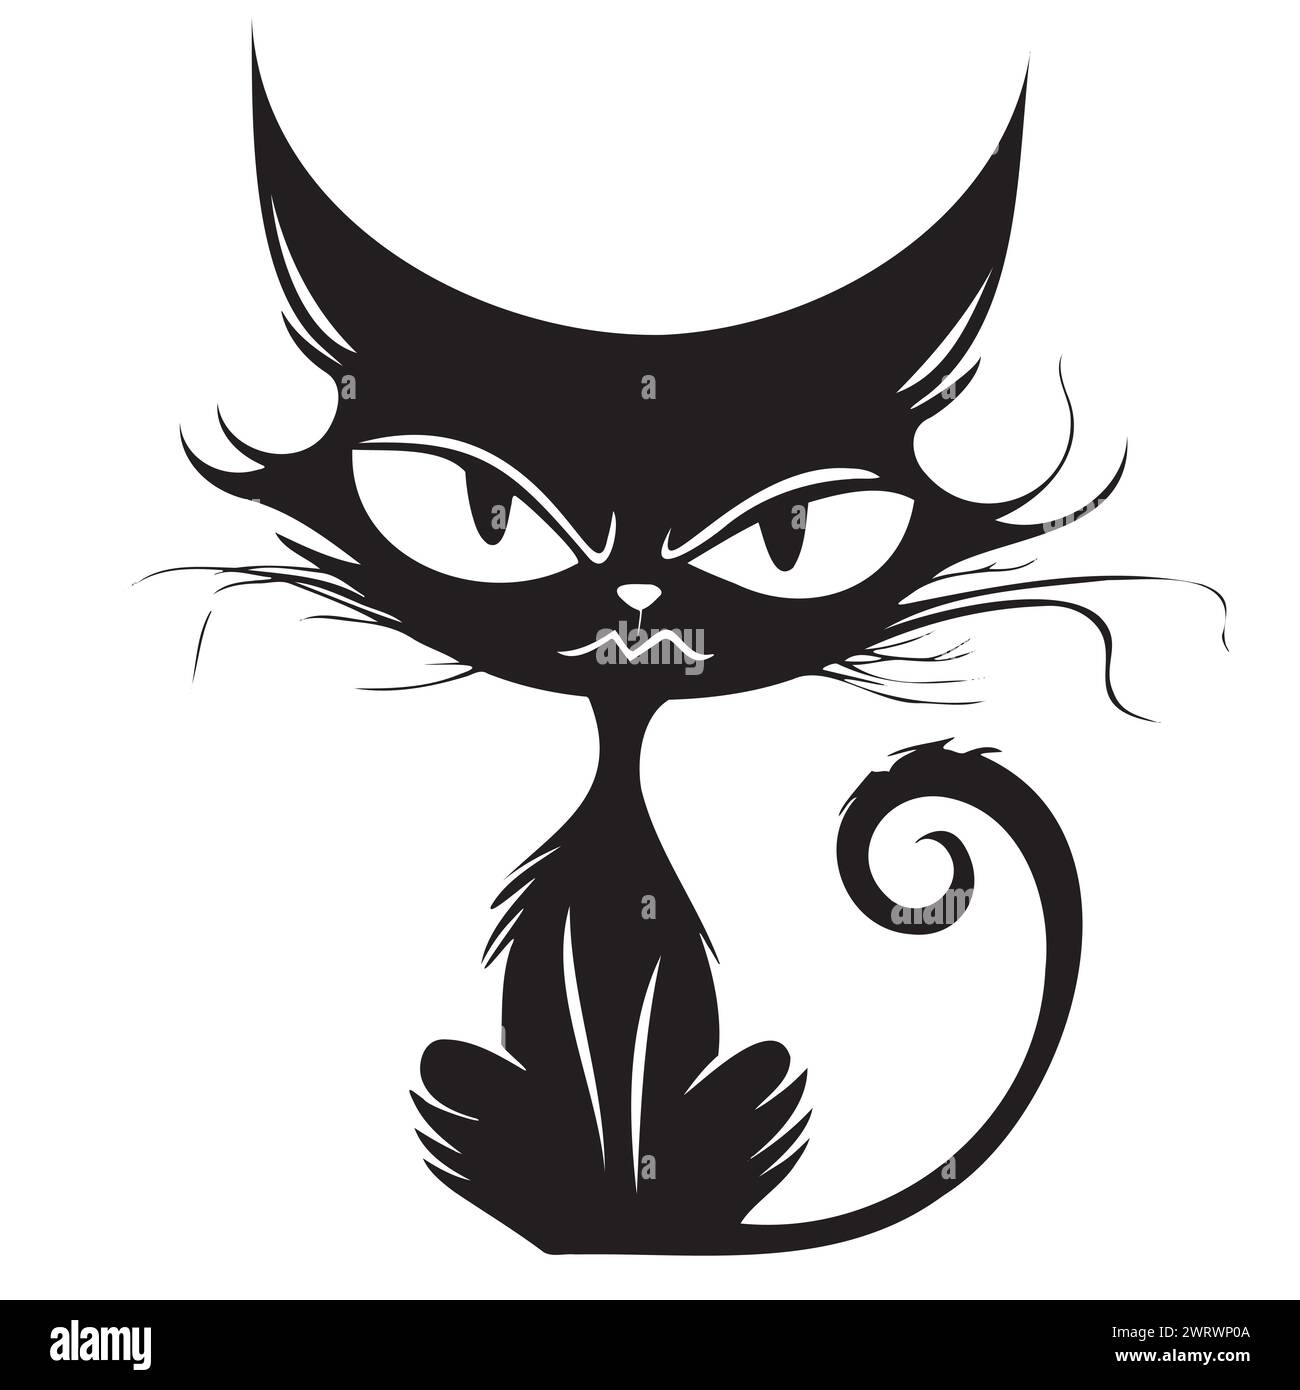 Schwarz-weiß-Zeichnung einer Katze Stock Vektor